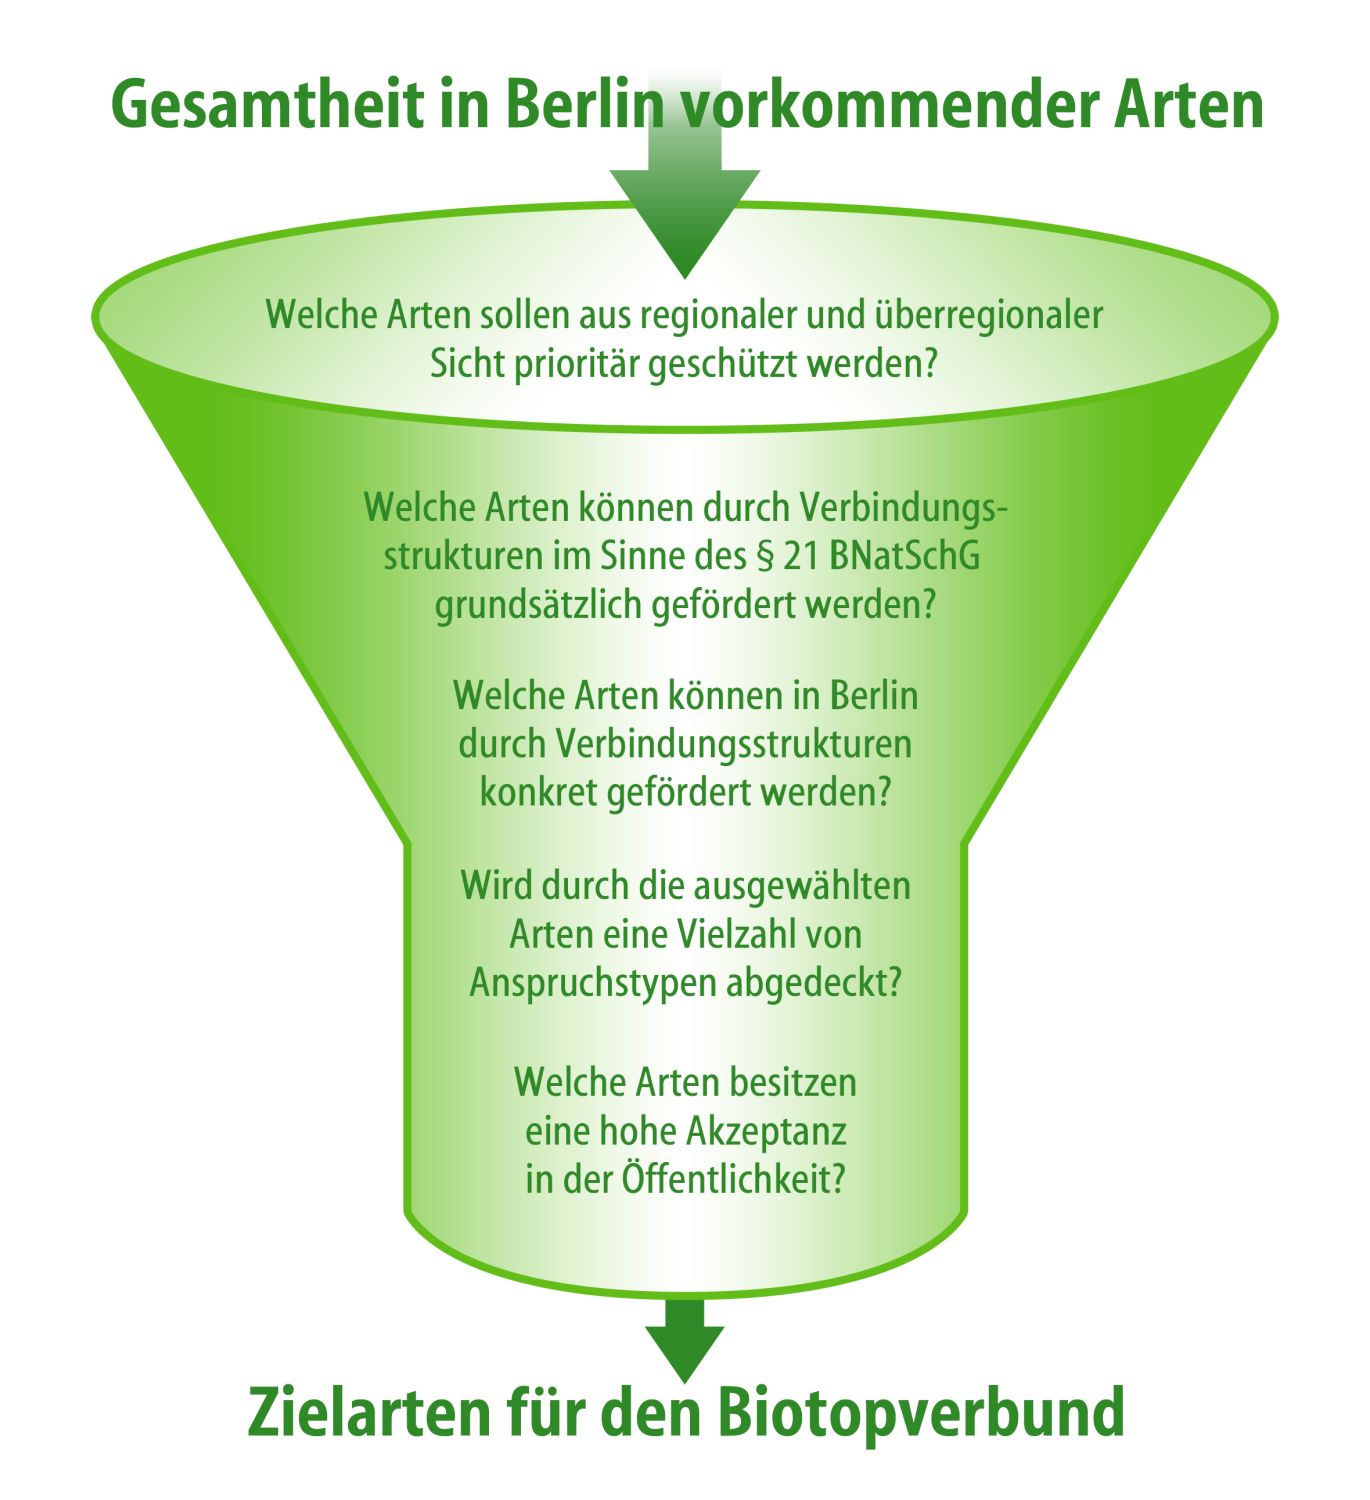 Schema zur Auswahl der Zielarten des Biotopverbunds in Berlin